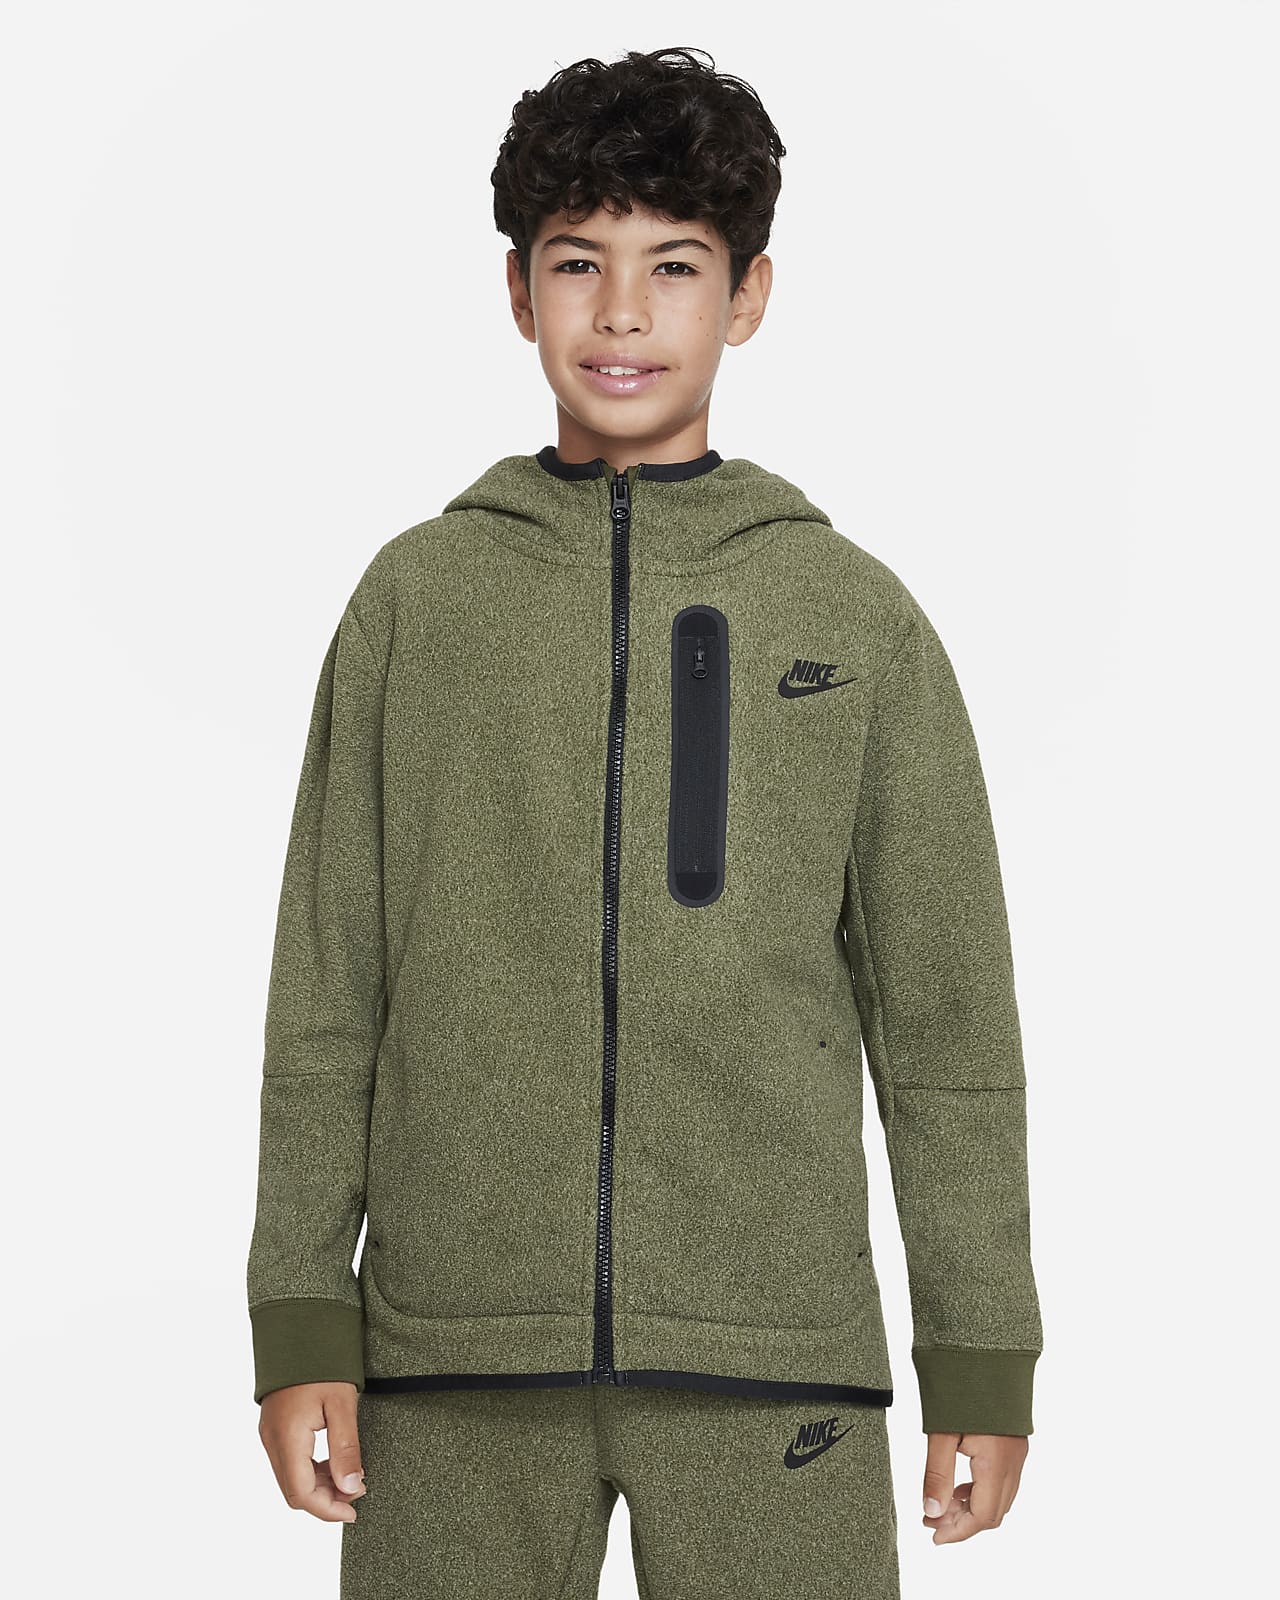 Paranafloden international Opdagelse Nike Sportswear Tech Fleece-hættetrøje til vinter med lynlås til større børn  (drenge). Nike DK